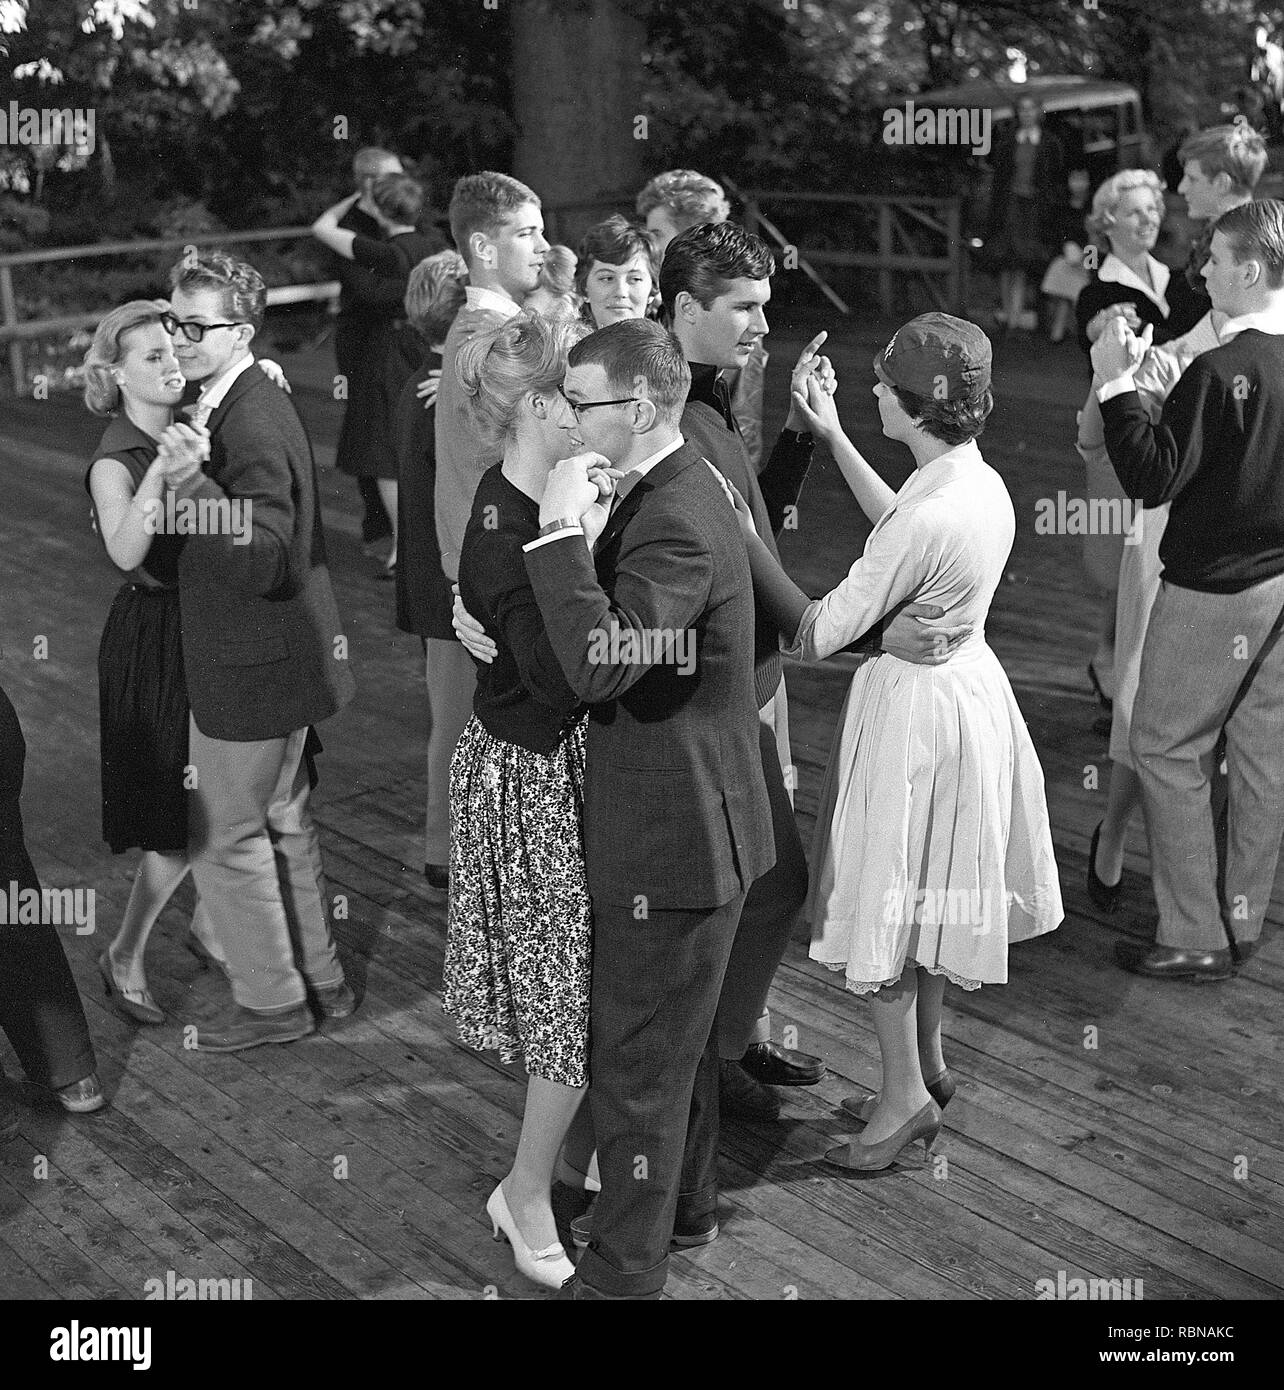 Dancing negli anni cinquanta. Un bel dehor estivo evento di ballo dove le giovani coppie sono ballare e divertirsi. La Svezia 1958. Rif BV104-4 Foto Stock